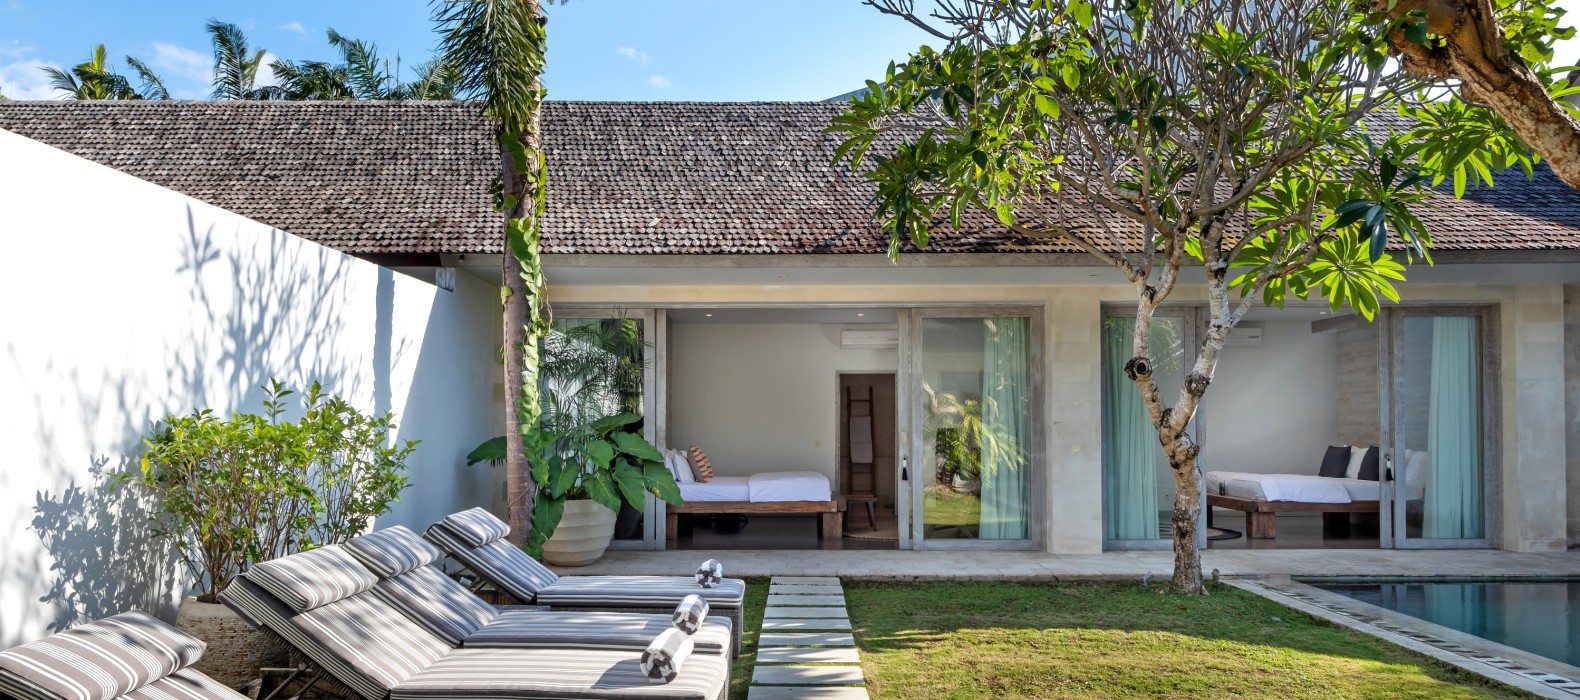 Sun loungers of Villa Mia in Bali